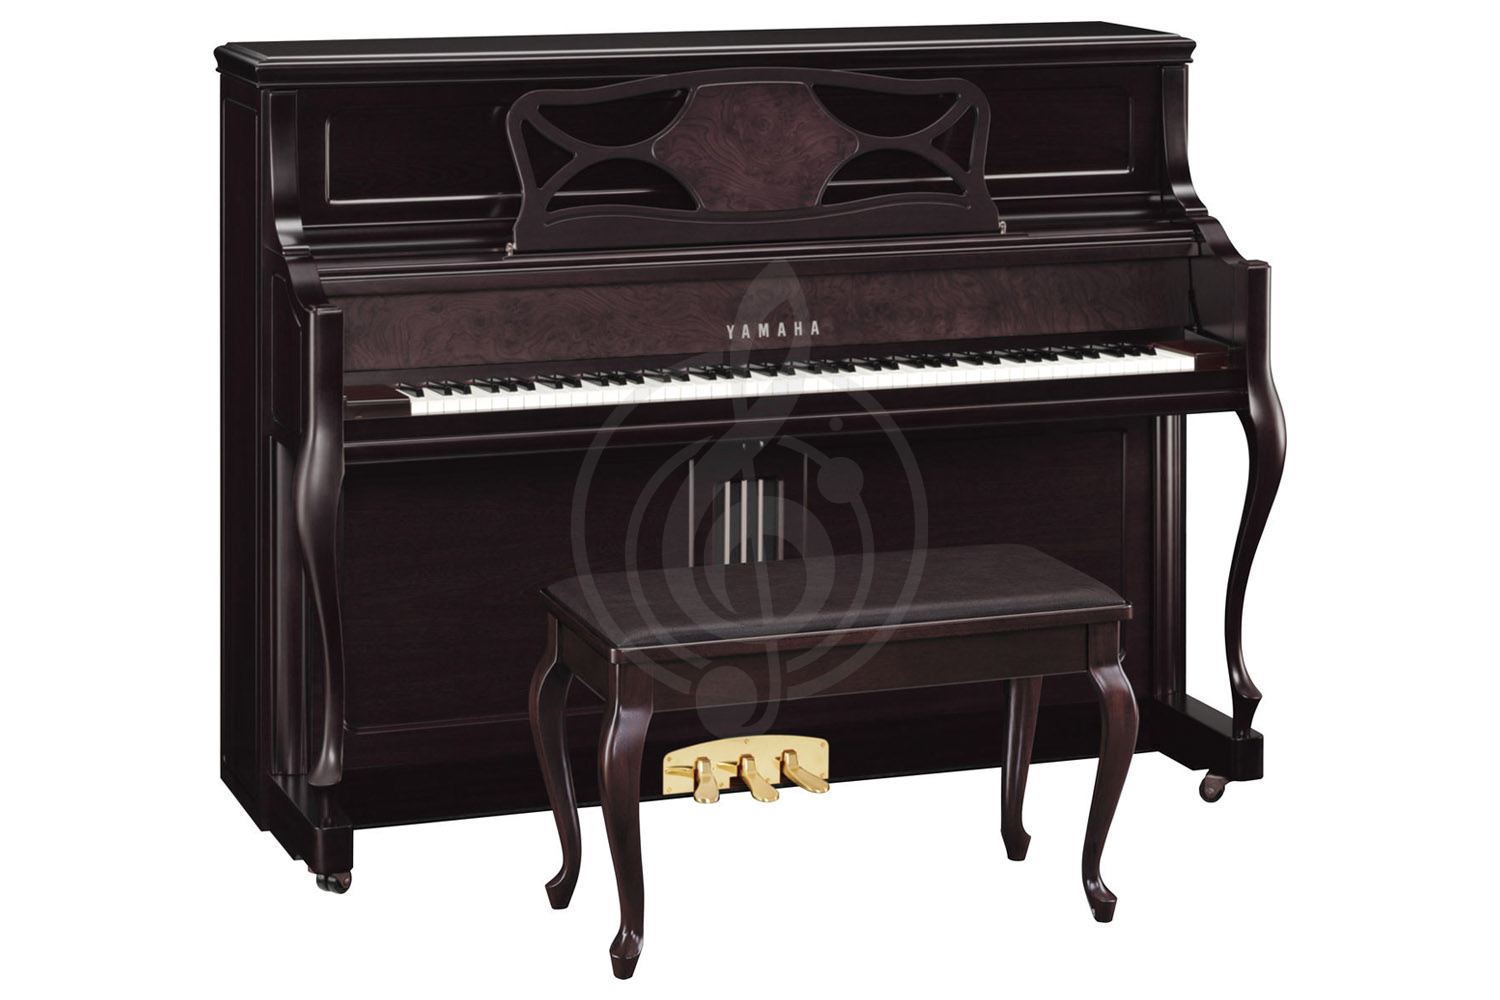 Акустическое пианино Пианино Yamaha Yamaha M3SBW - пианино 118см, черный орех сатинированное, с банкеткой M3 SBW//LZ.WITH BENCH - фото 1